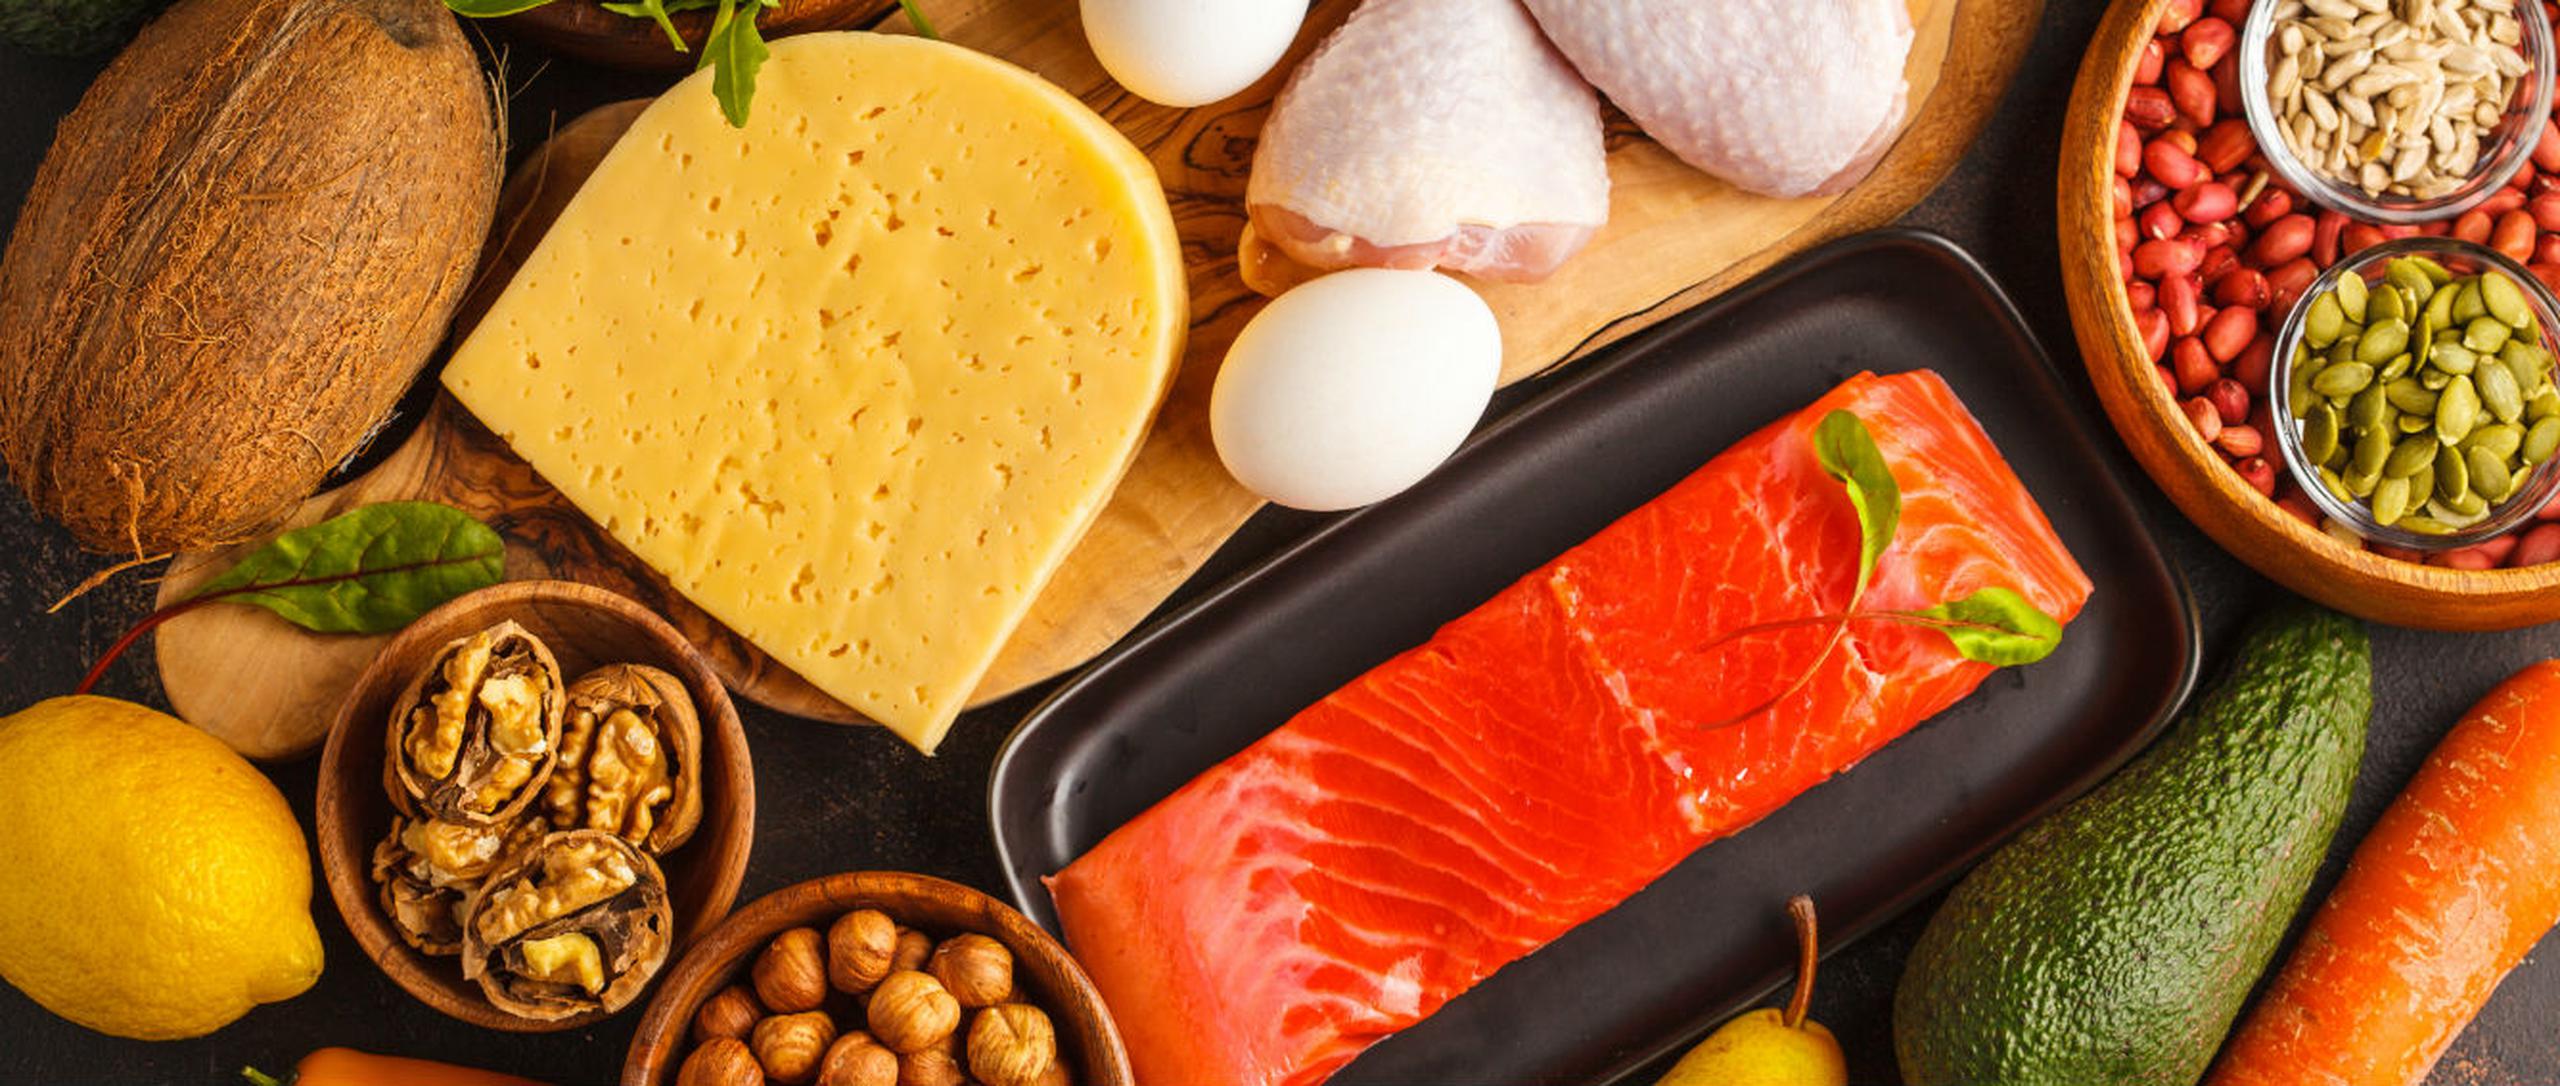 Hay alimentos que tienen grasas saturadas que son saludables y se ha demostrado que no afectan los niveles de colesterol ni implican riesgos cardiovasculares. (Shutterstock)